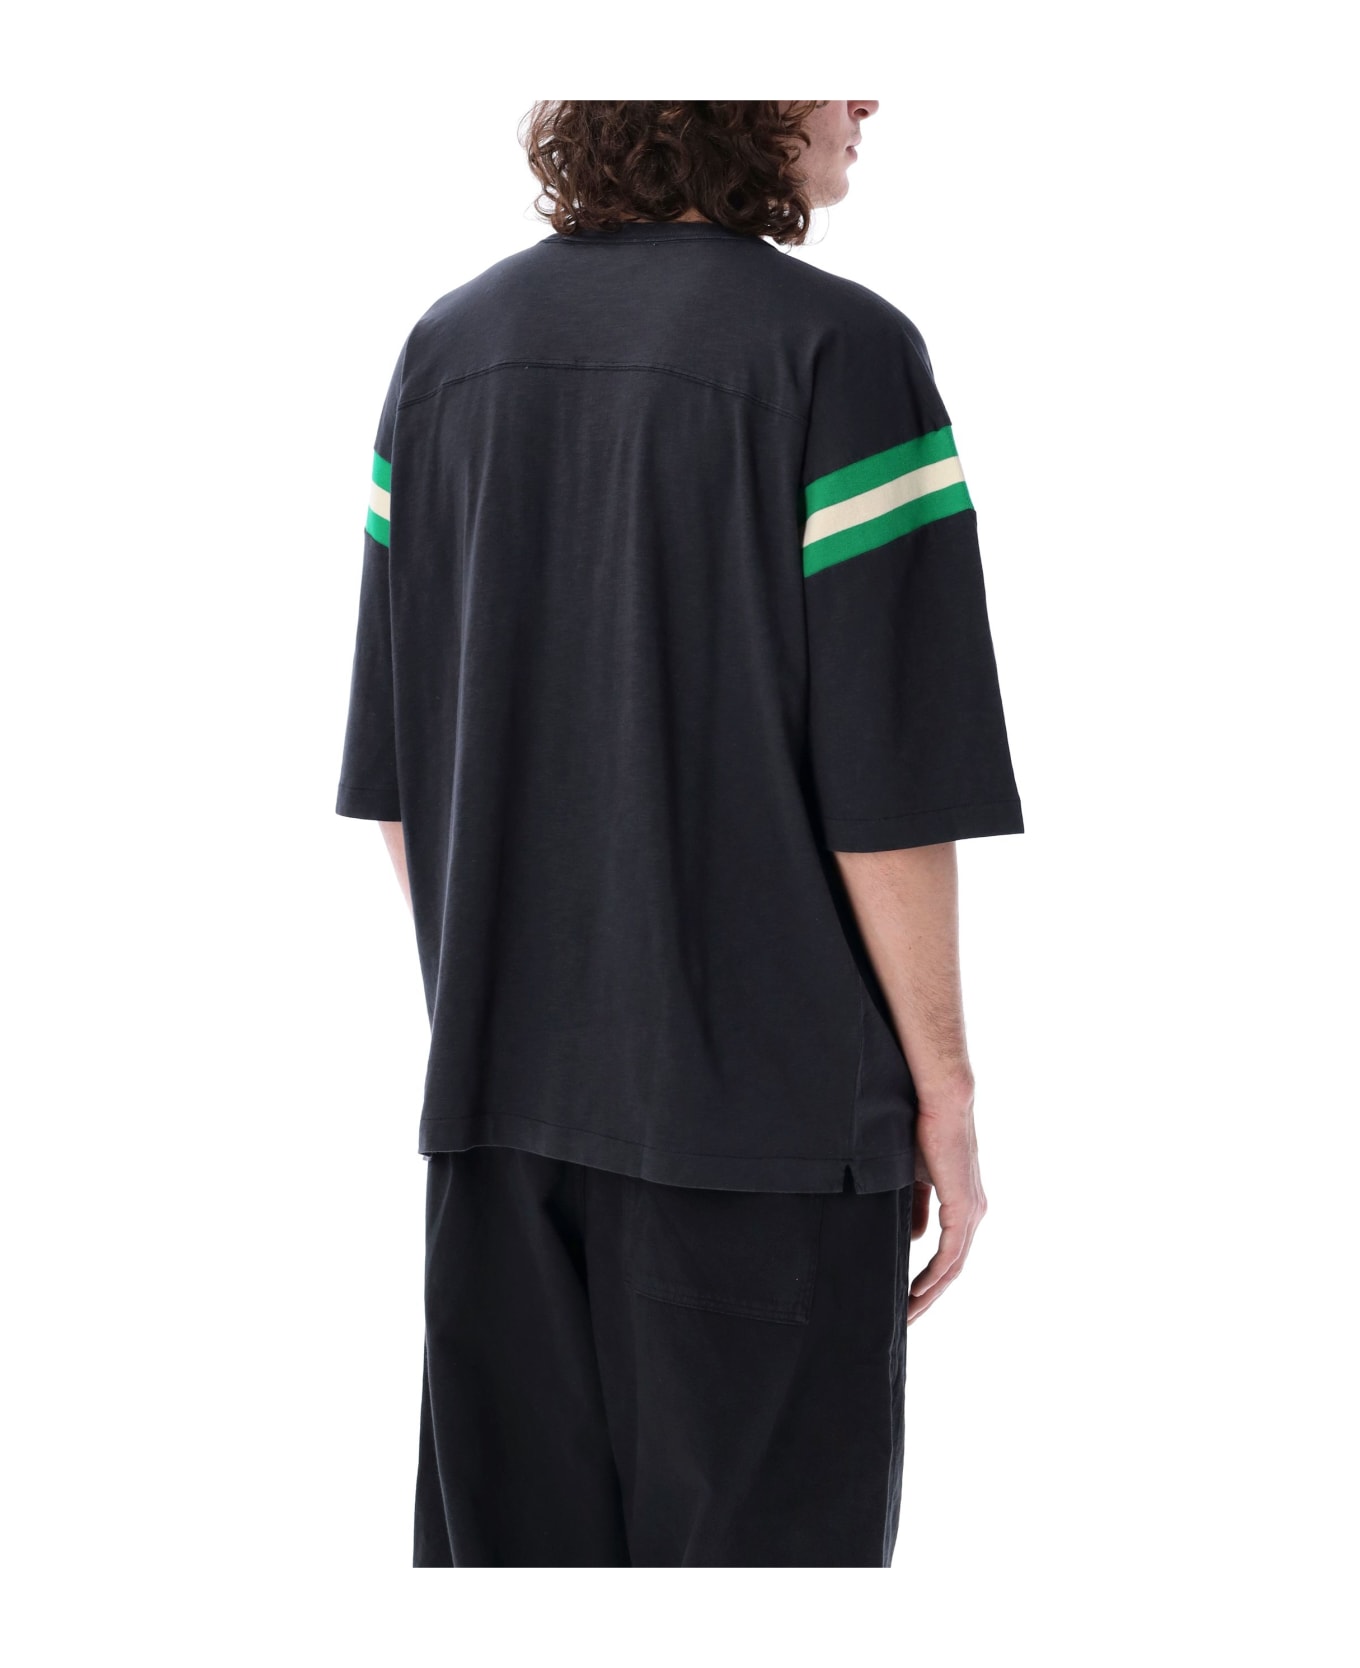 YMC Skate T-shirt - BLACK/GREEN/ECRU